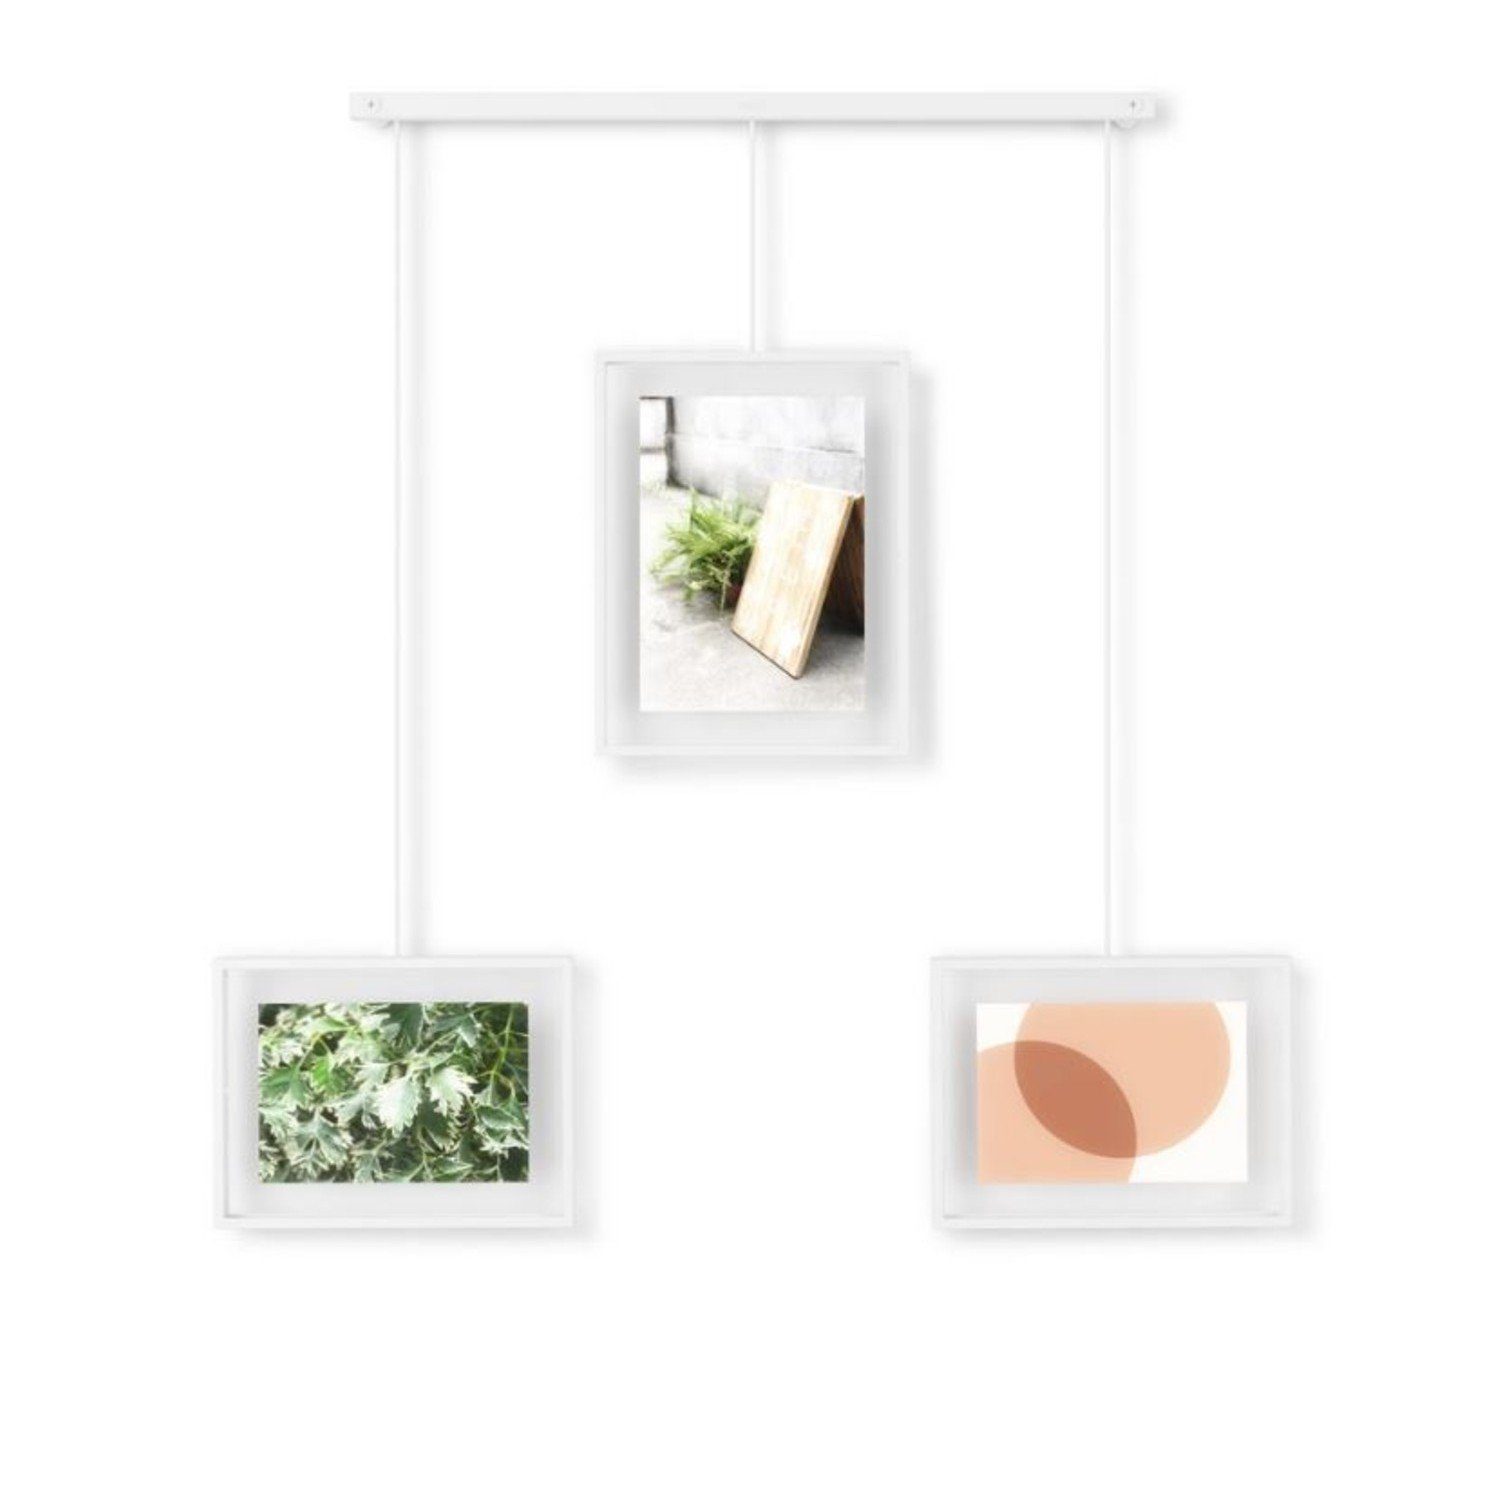 Bilder-Display Umbra Exhibit Bilderrahmen 3er-Set weiß Collage